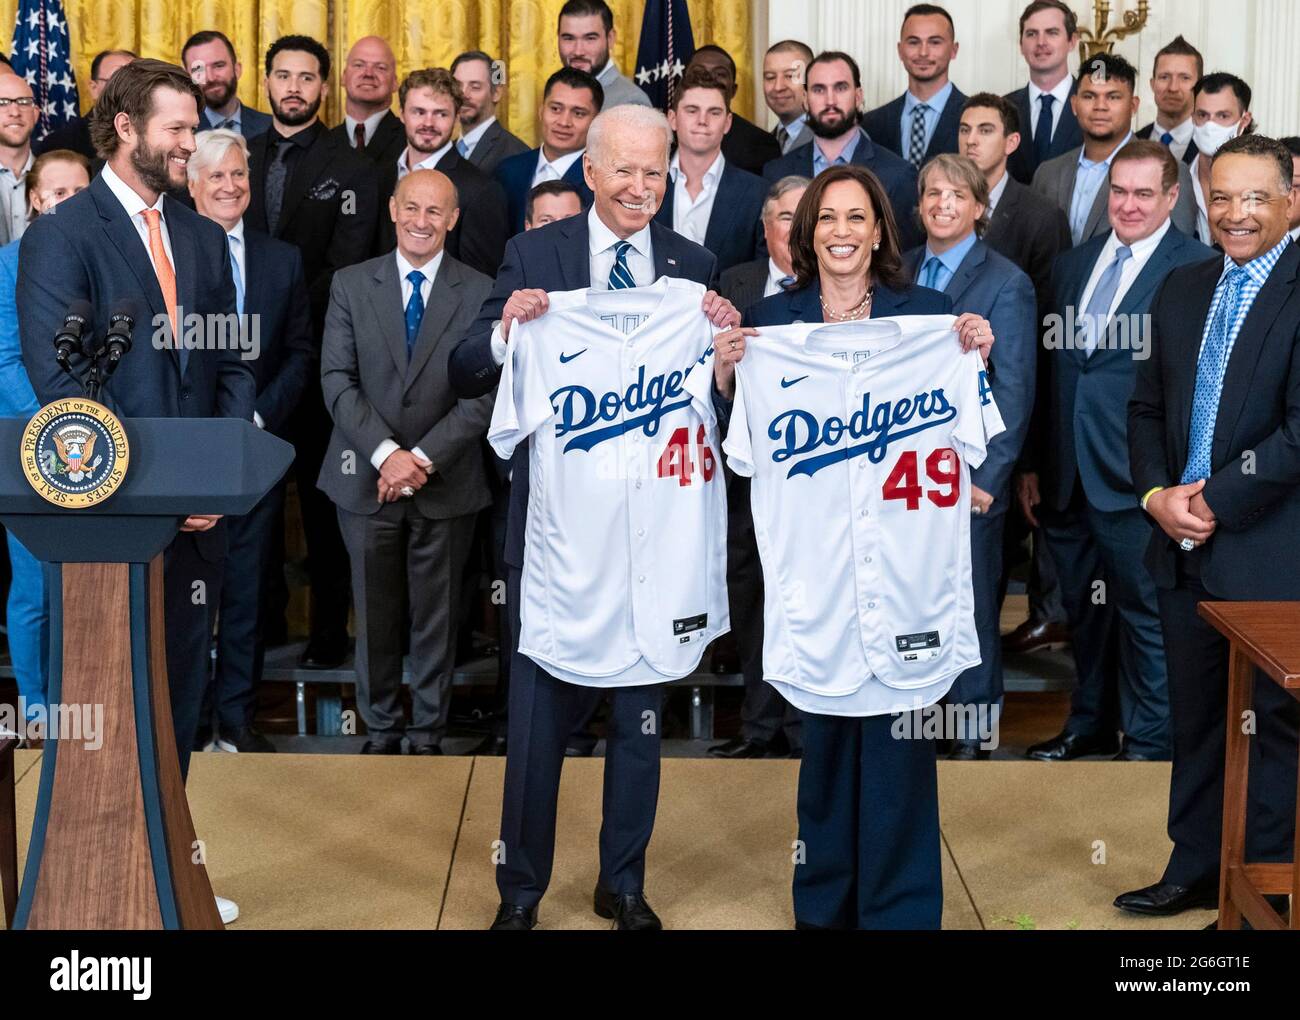 US-Präsident Joe Biden und Vizepräsident Kamala Harris halten Los Angeles Dodger Baseballtrikots während einer Zeremonie zu Ehren des Teams im East Room im Weißen Haus am 2. Juli 2021 in Washington, D.C., hoch.die Dodgers gewannen die World Series 2020. Stockfoto